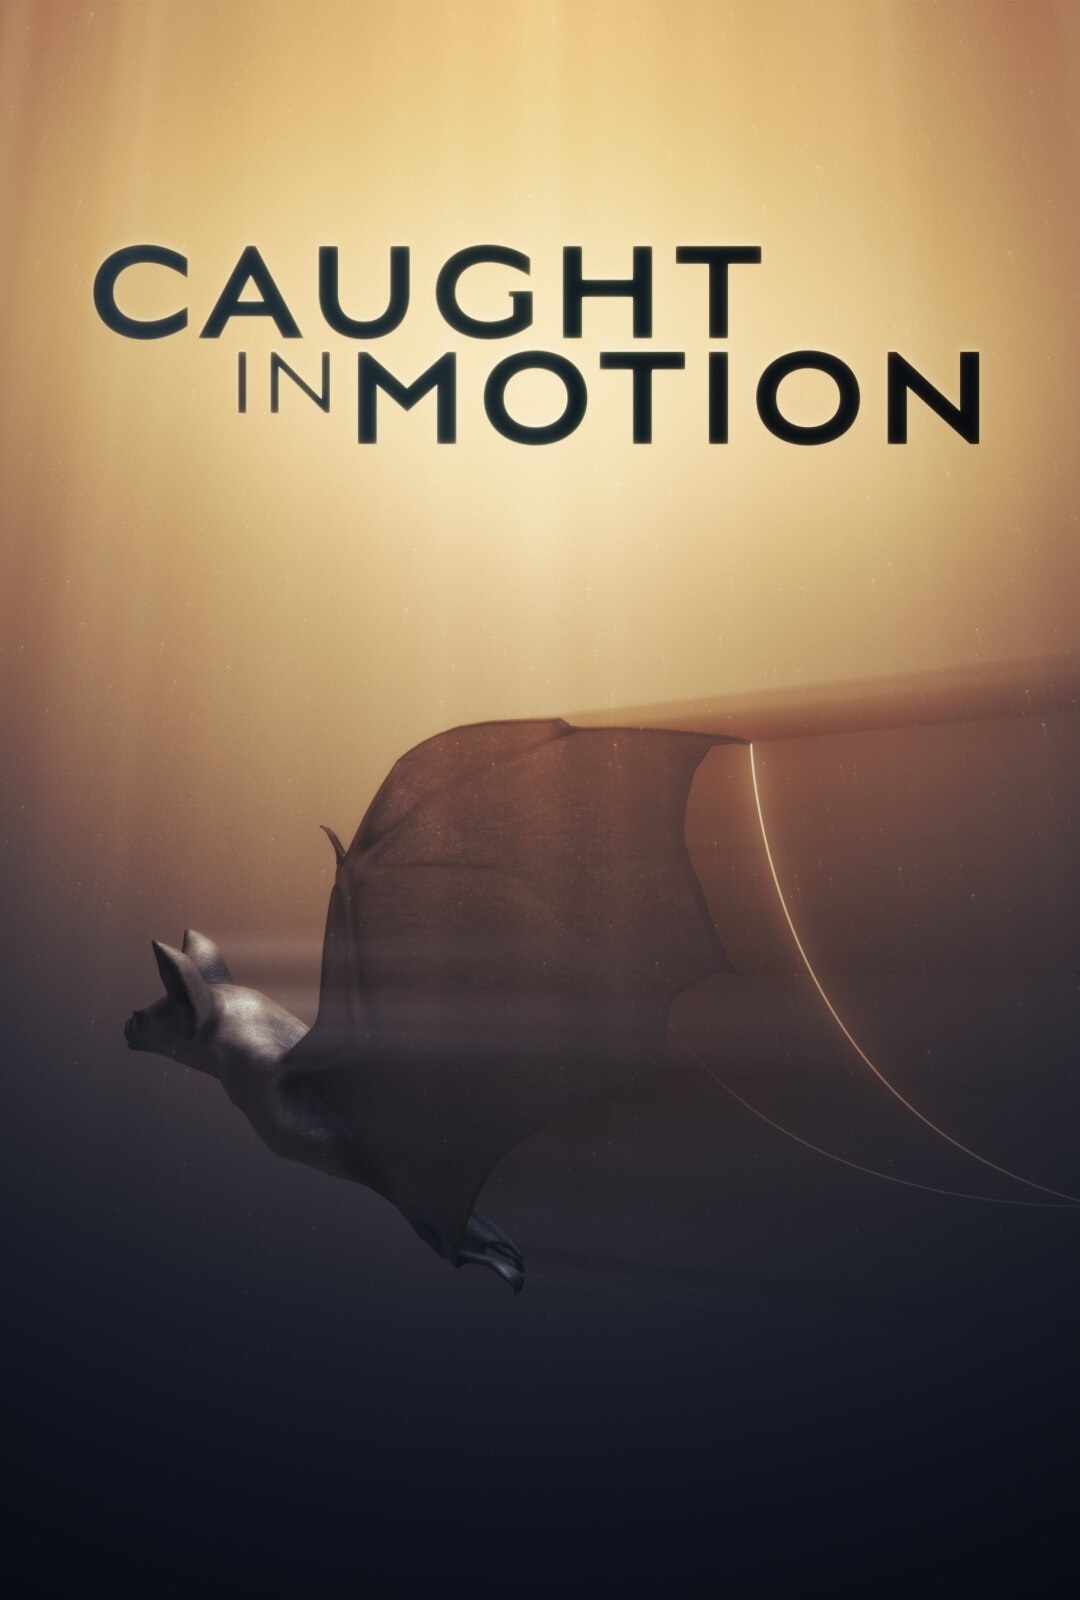 Caratula de Caught in motion (Movimiento Animal) 